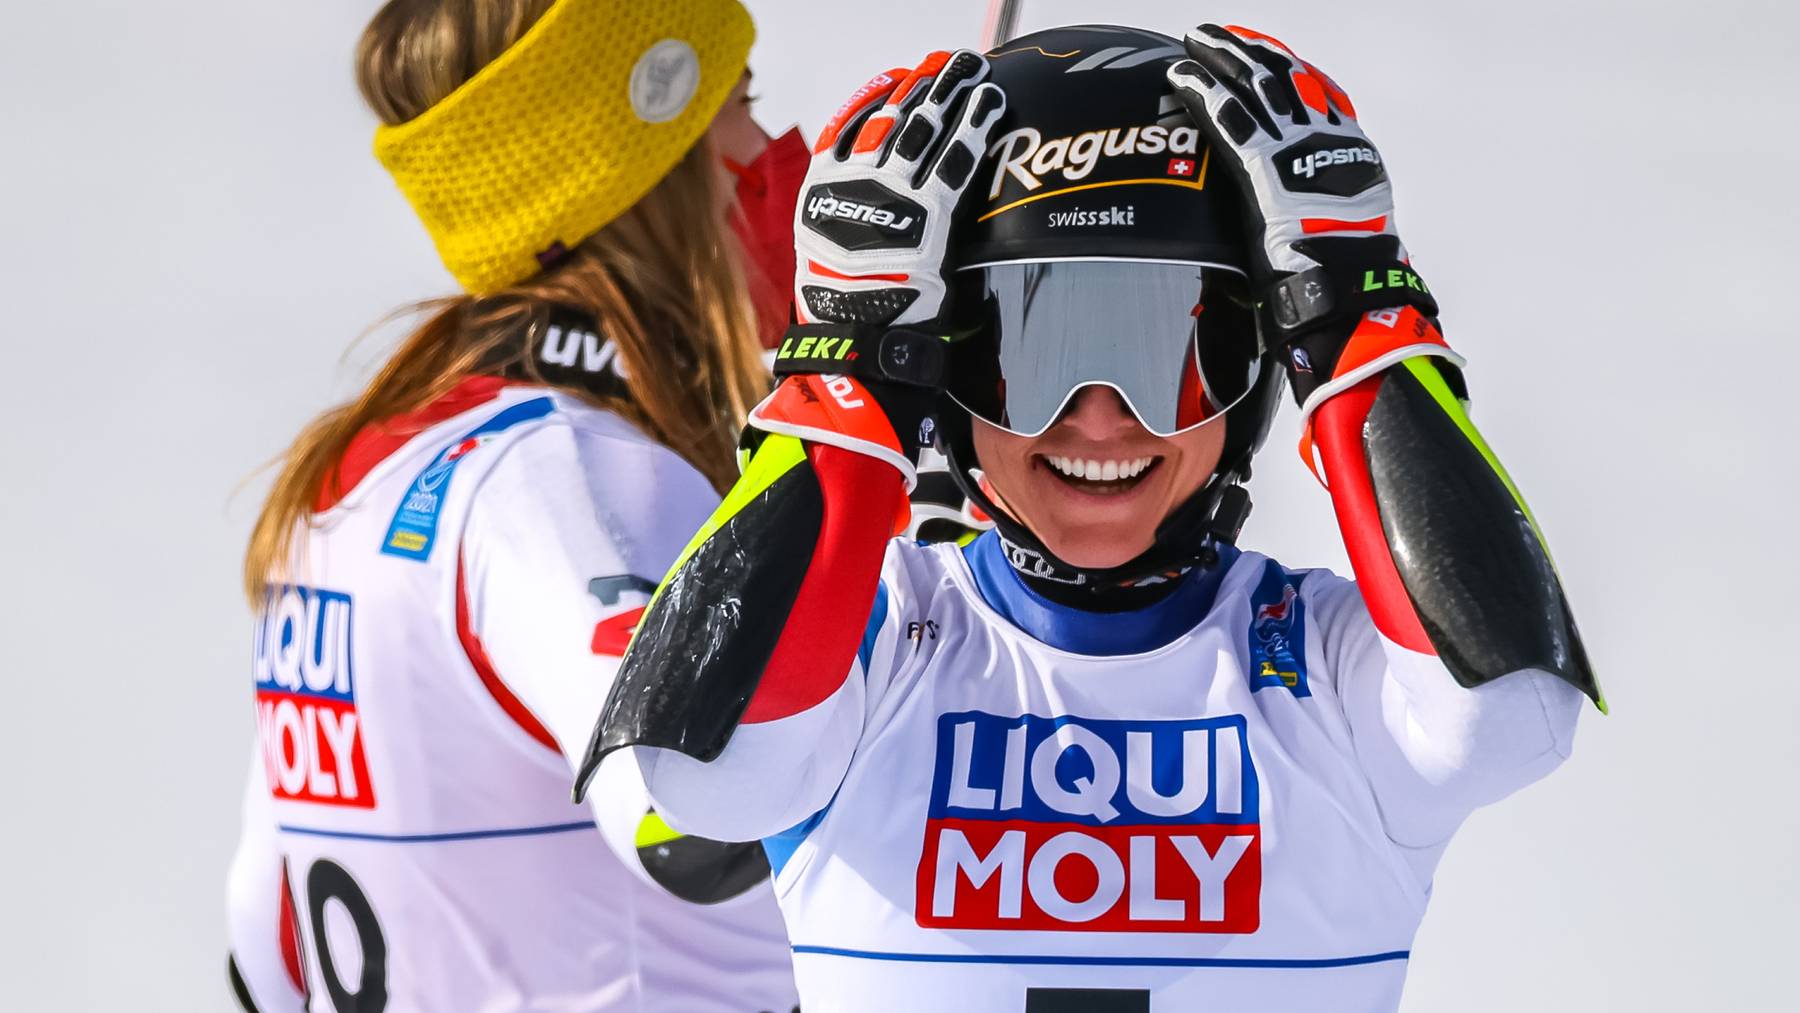 Katharina Liensberger (AUT) Bronzemedaillen Gewinnerin im Riesenslalom der Damen 2021, Lara Gut Behrami (SUI) Goldmedaillen Gewinnerin und Weltmeisterin im Riesenslalom der Damen 2021 am Donnerstag, 18. Februar 2021 während dem 2. Lauf für den Riesentorlauf der Damen im Rahmen der Alpinen Ski-Weltmeisterschaft 2021 in Cortina d'Ampezzo.